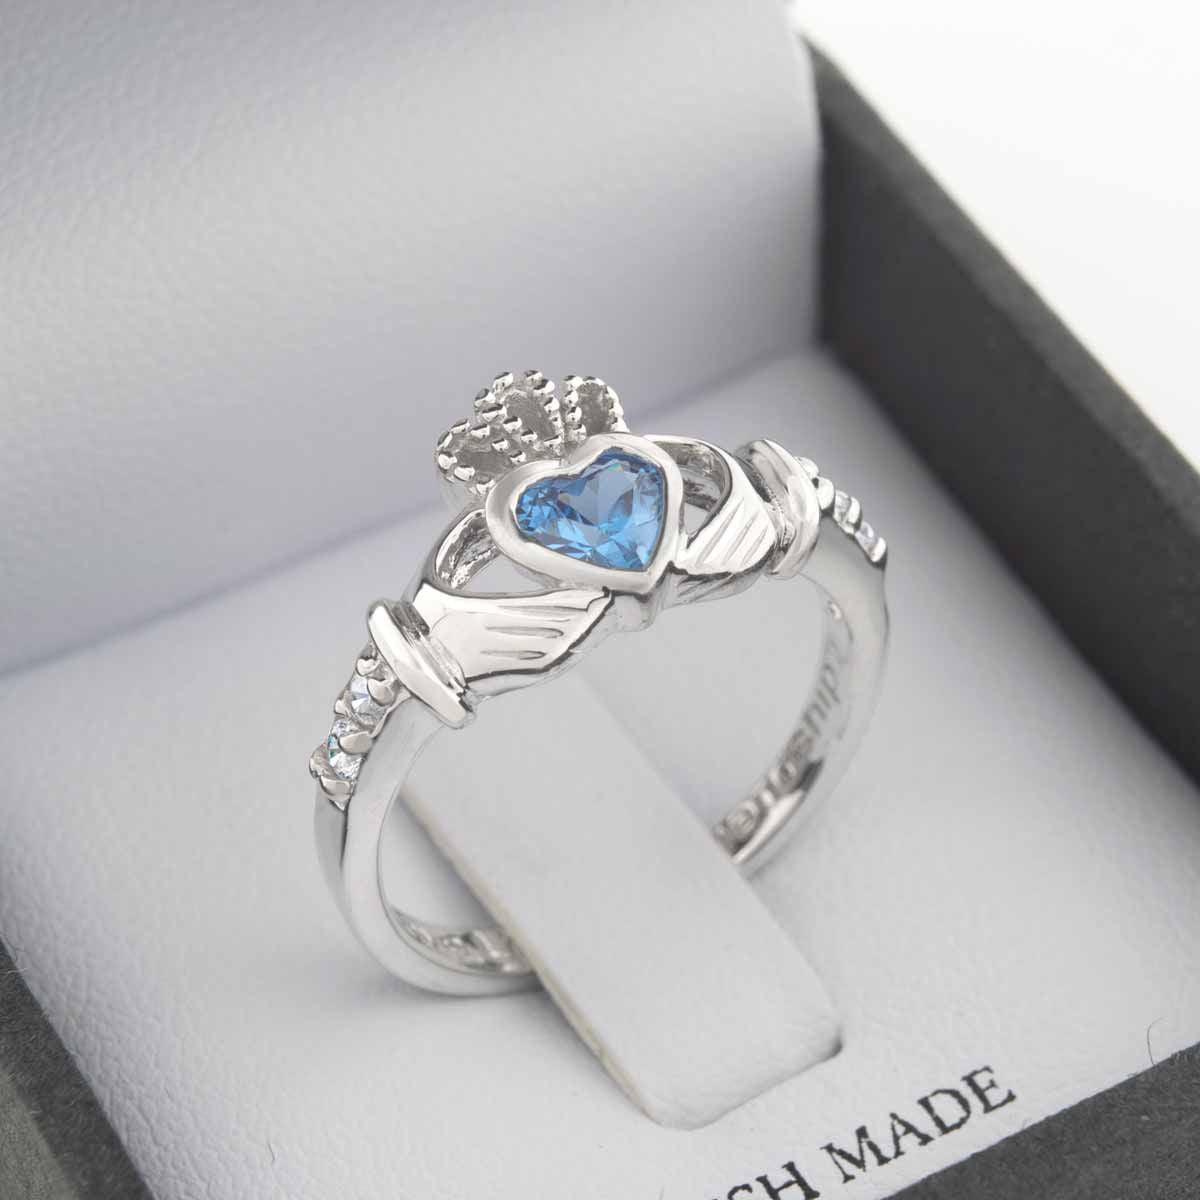 March Birthstone Aquamarine Crystal Claddagh Ring - Irish Claddagh Ring